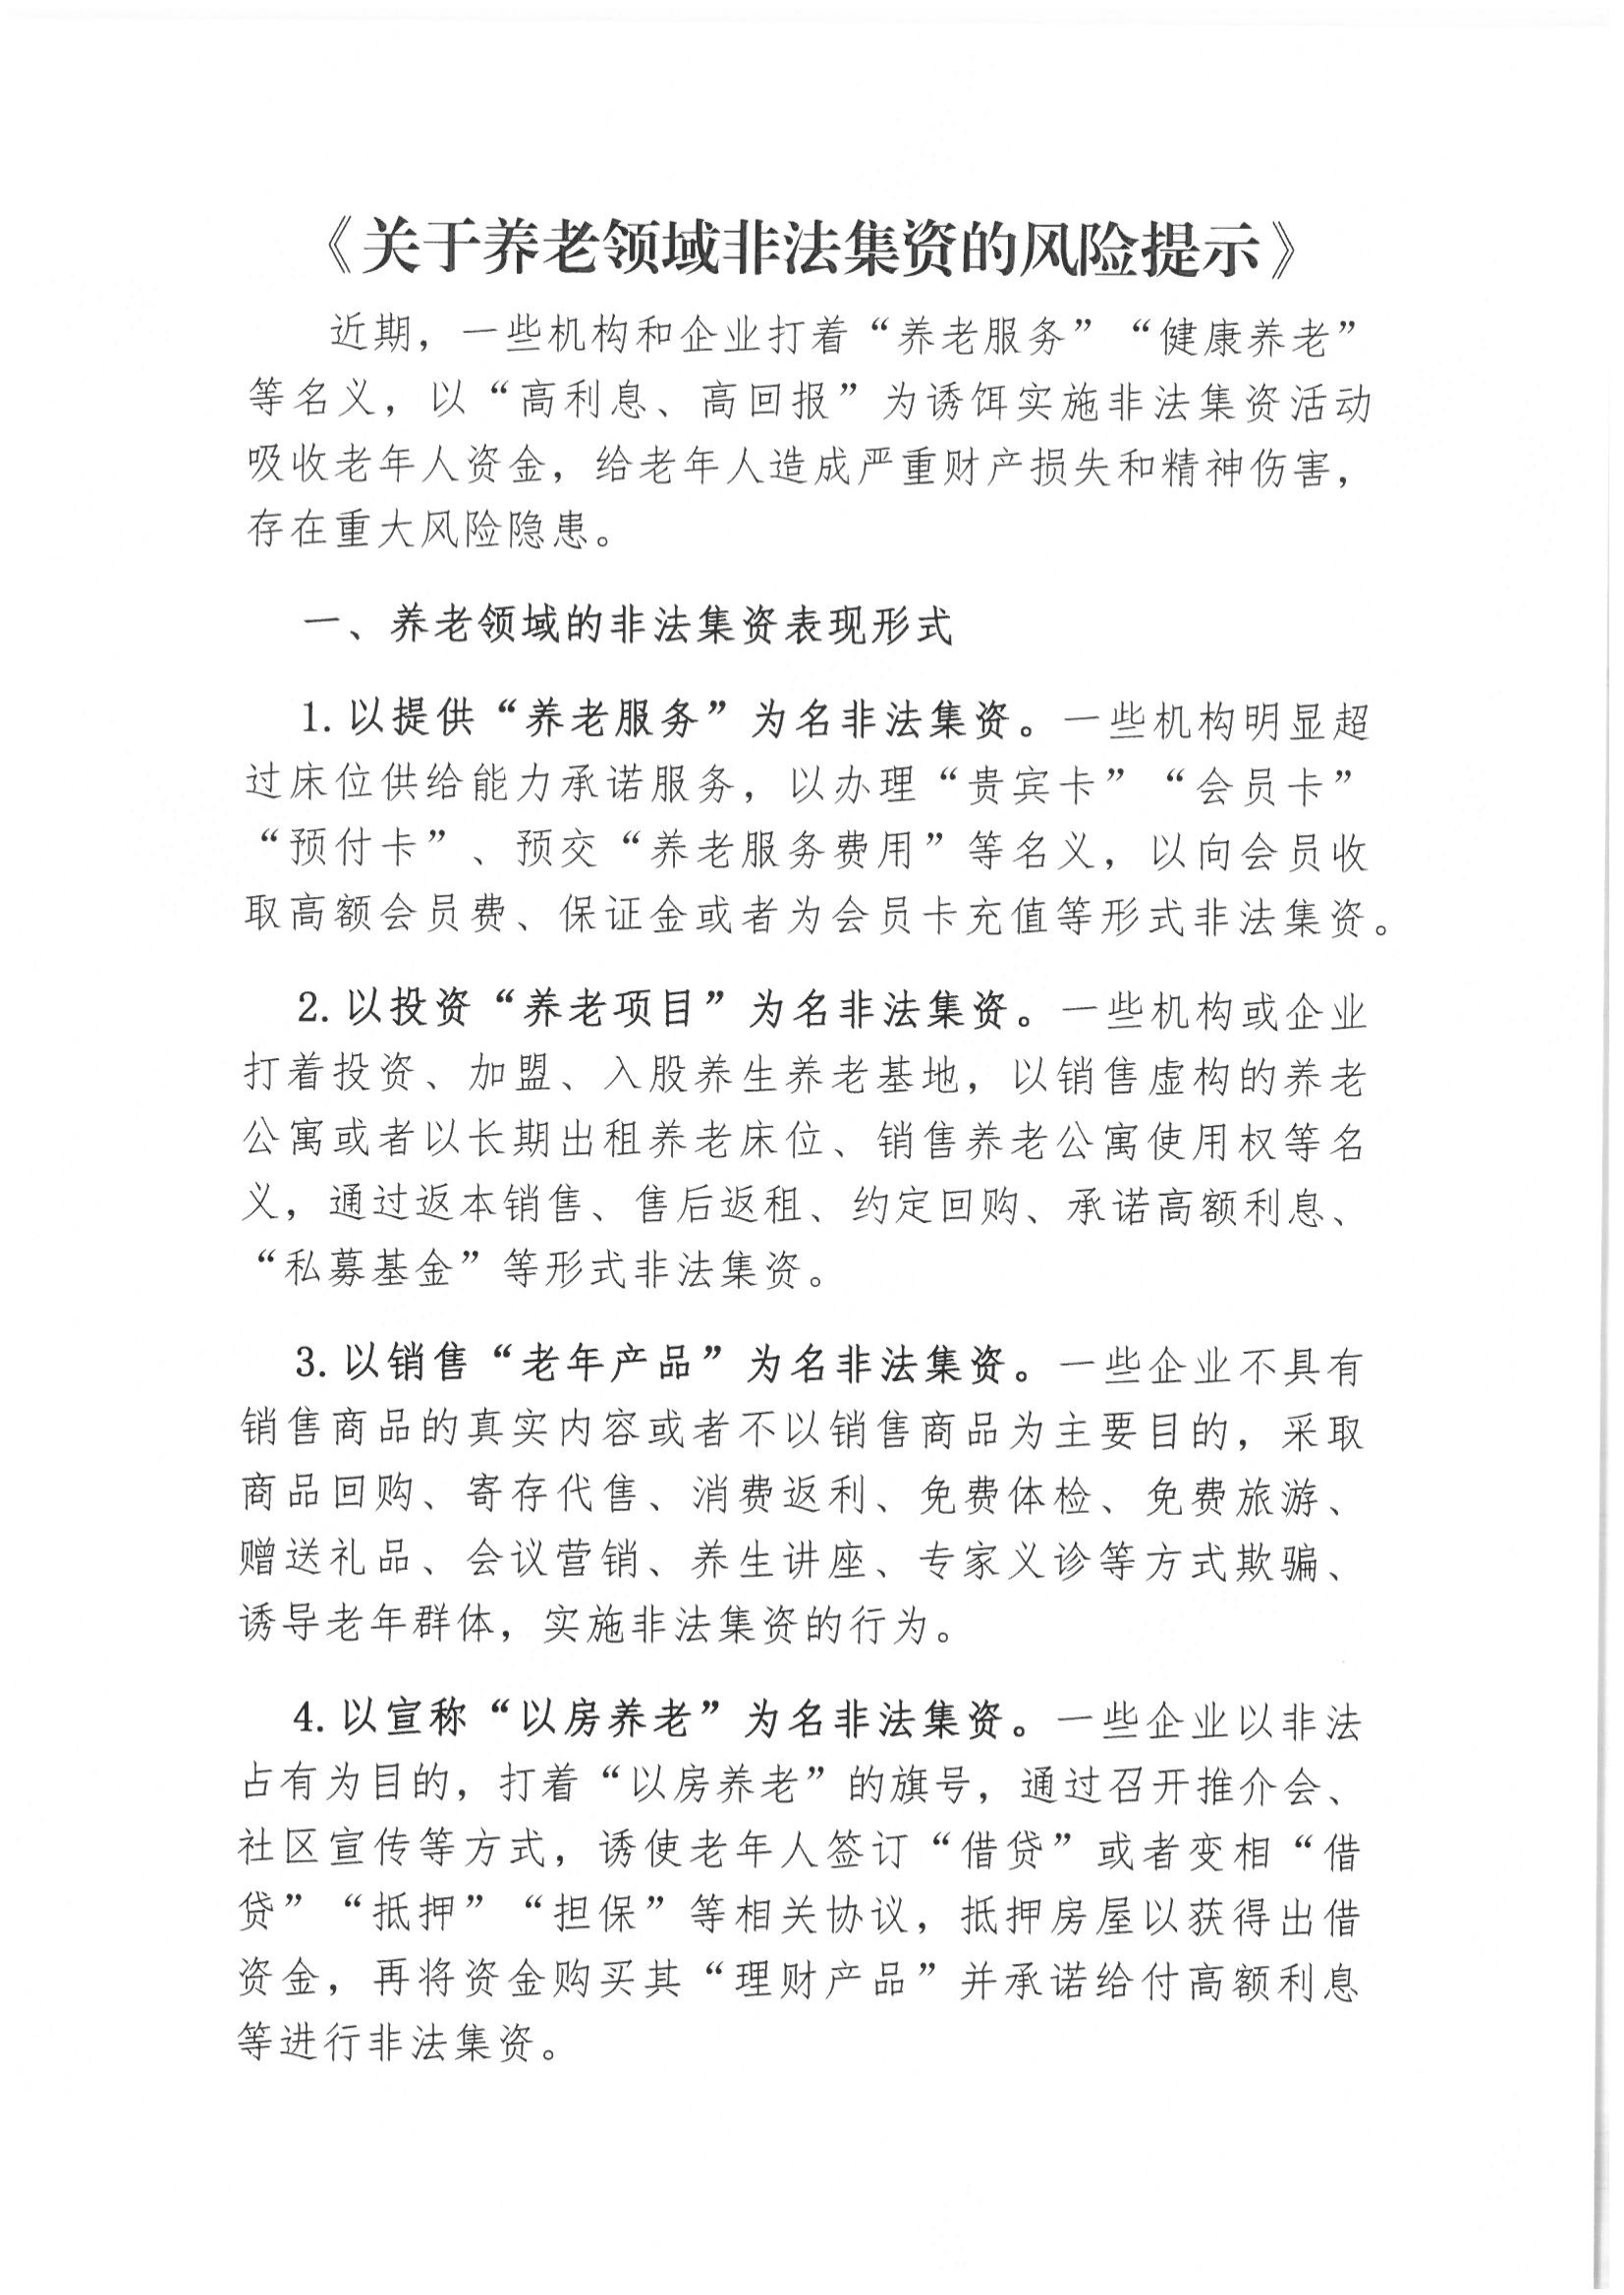 6、北京市公证协会风险提示【2021年第1号】_02